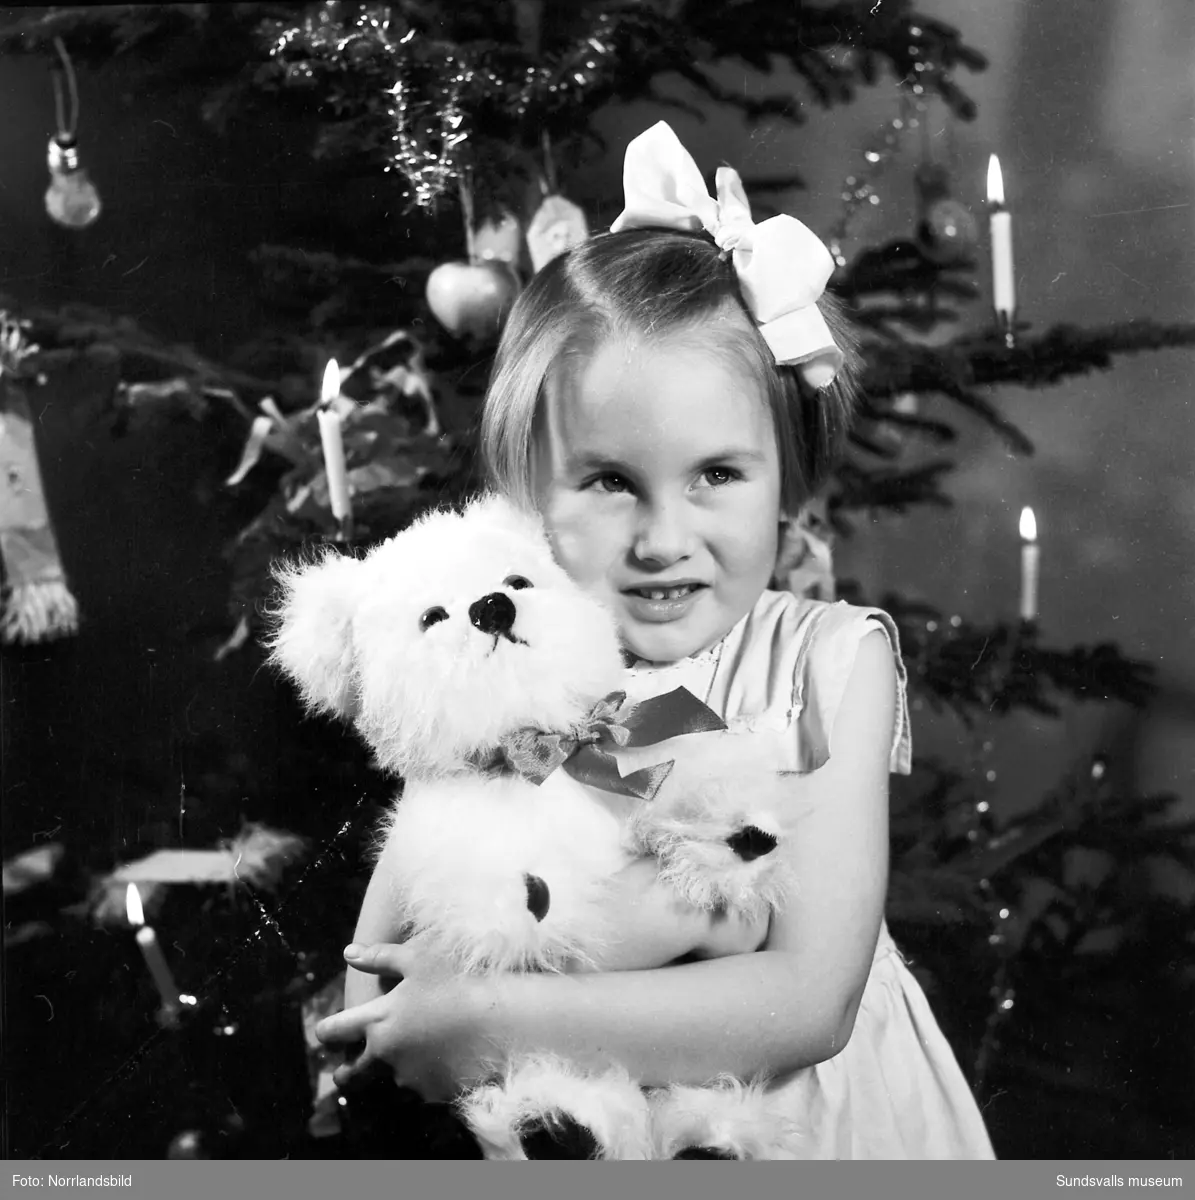 En liten flicka, Lena Tranberg, sitter framför julgranen med en nyöppnad present - en leksakshund.